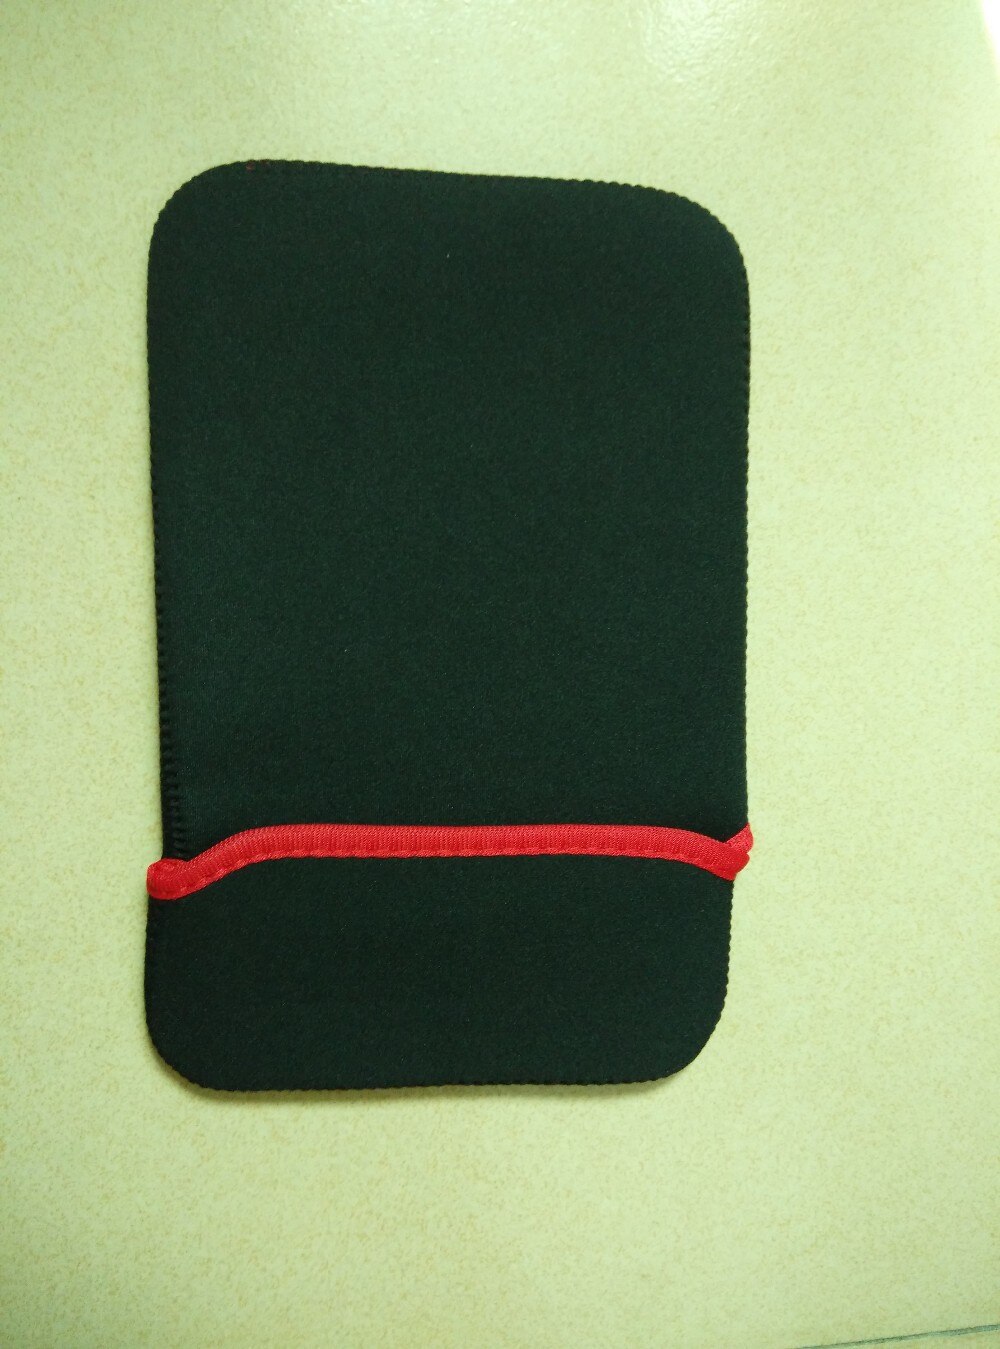 7 "7 inch soft bag sleeve case gebruikt voor 7 inch tablet